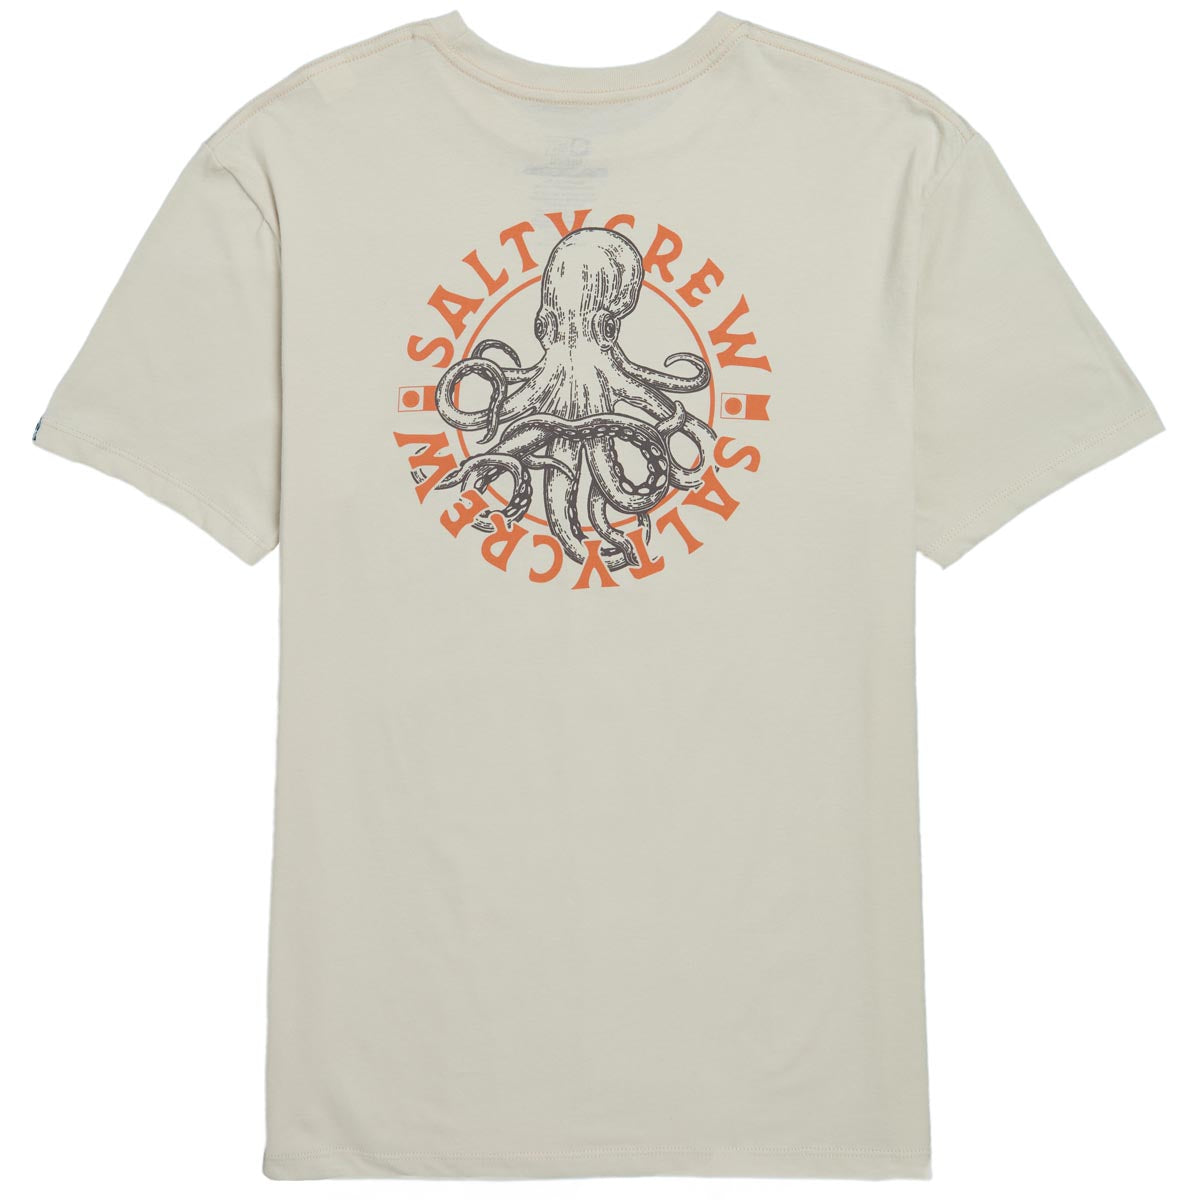 Salty Crew Tentacles Premium T-Shirt - Bone image 1